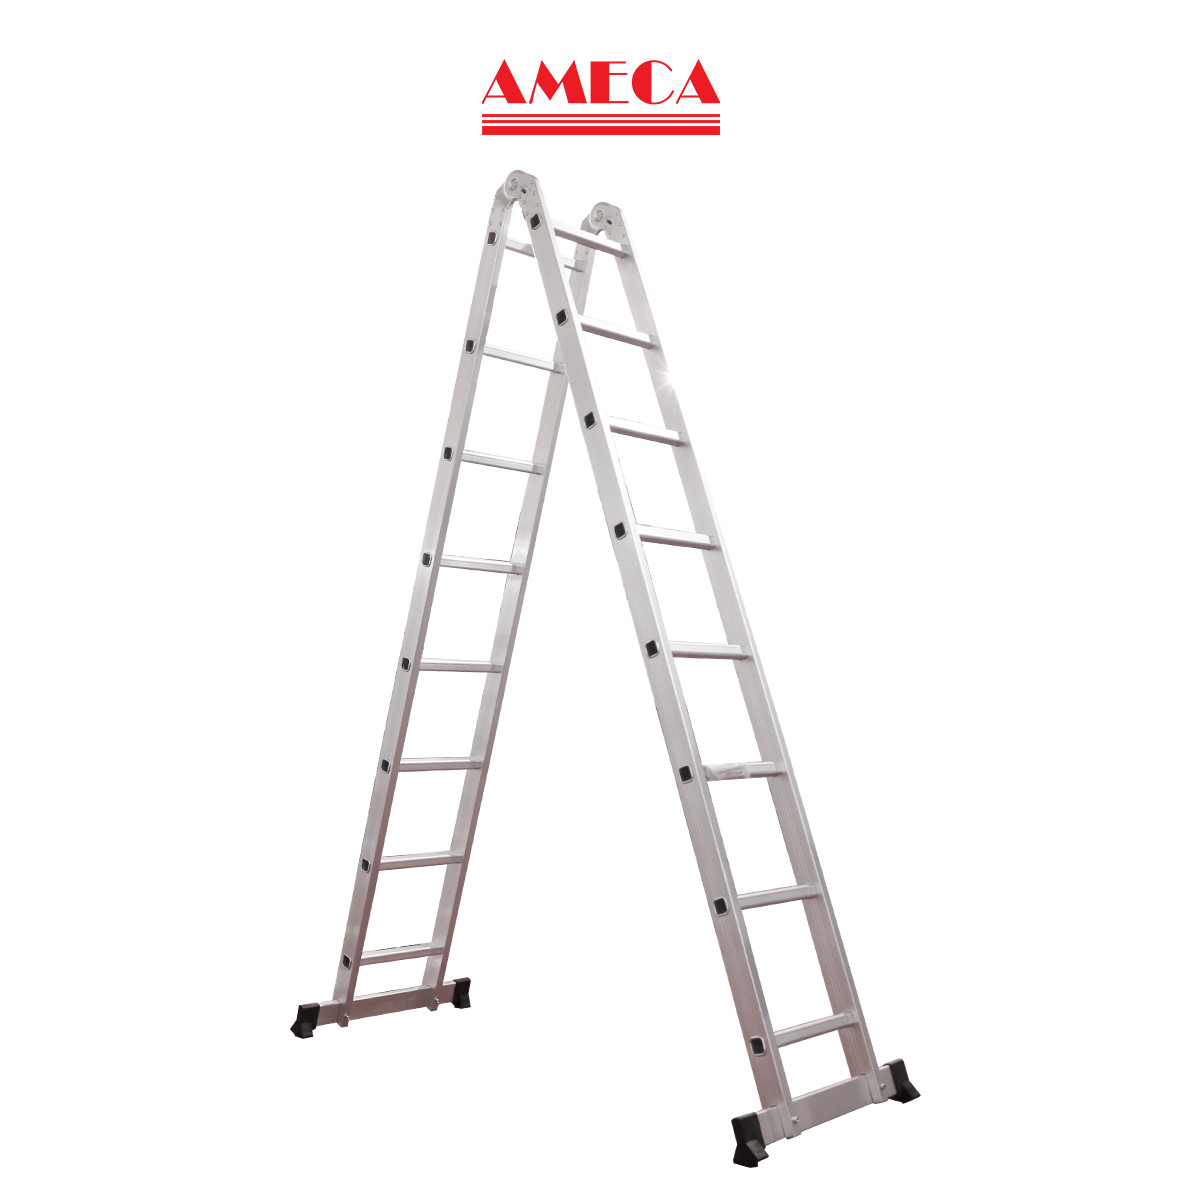 Thang nhôm gấp chữ A khóa tự động Ameca AMC-M309 chiều cao chữ A 2,6m